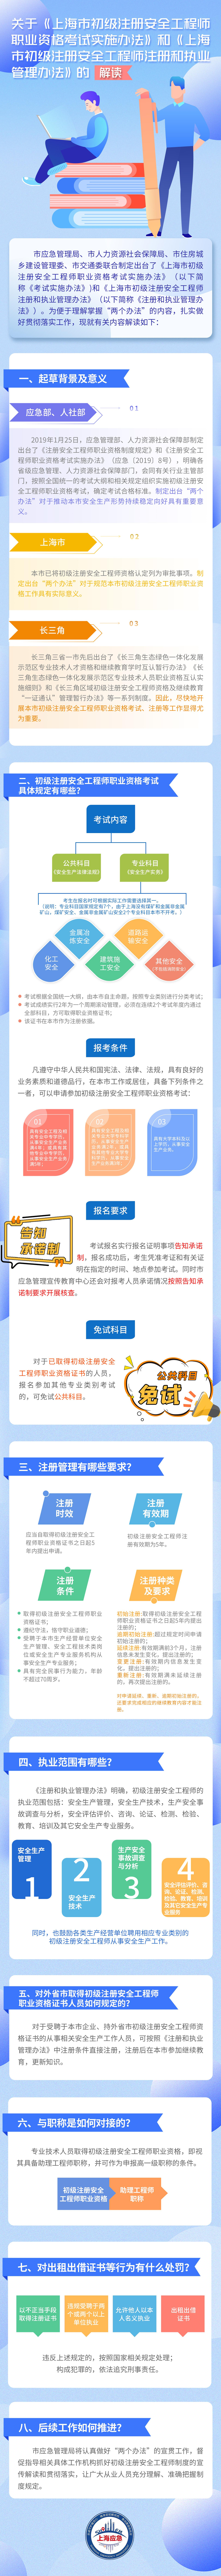 关于《上海市初级注册安全工程师职业资格考试实施办法》和《上海市初级注册安全工程师注册和执业管理办法》的解读.jpg